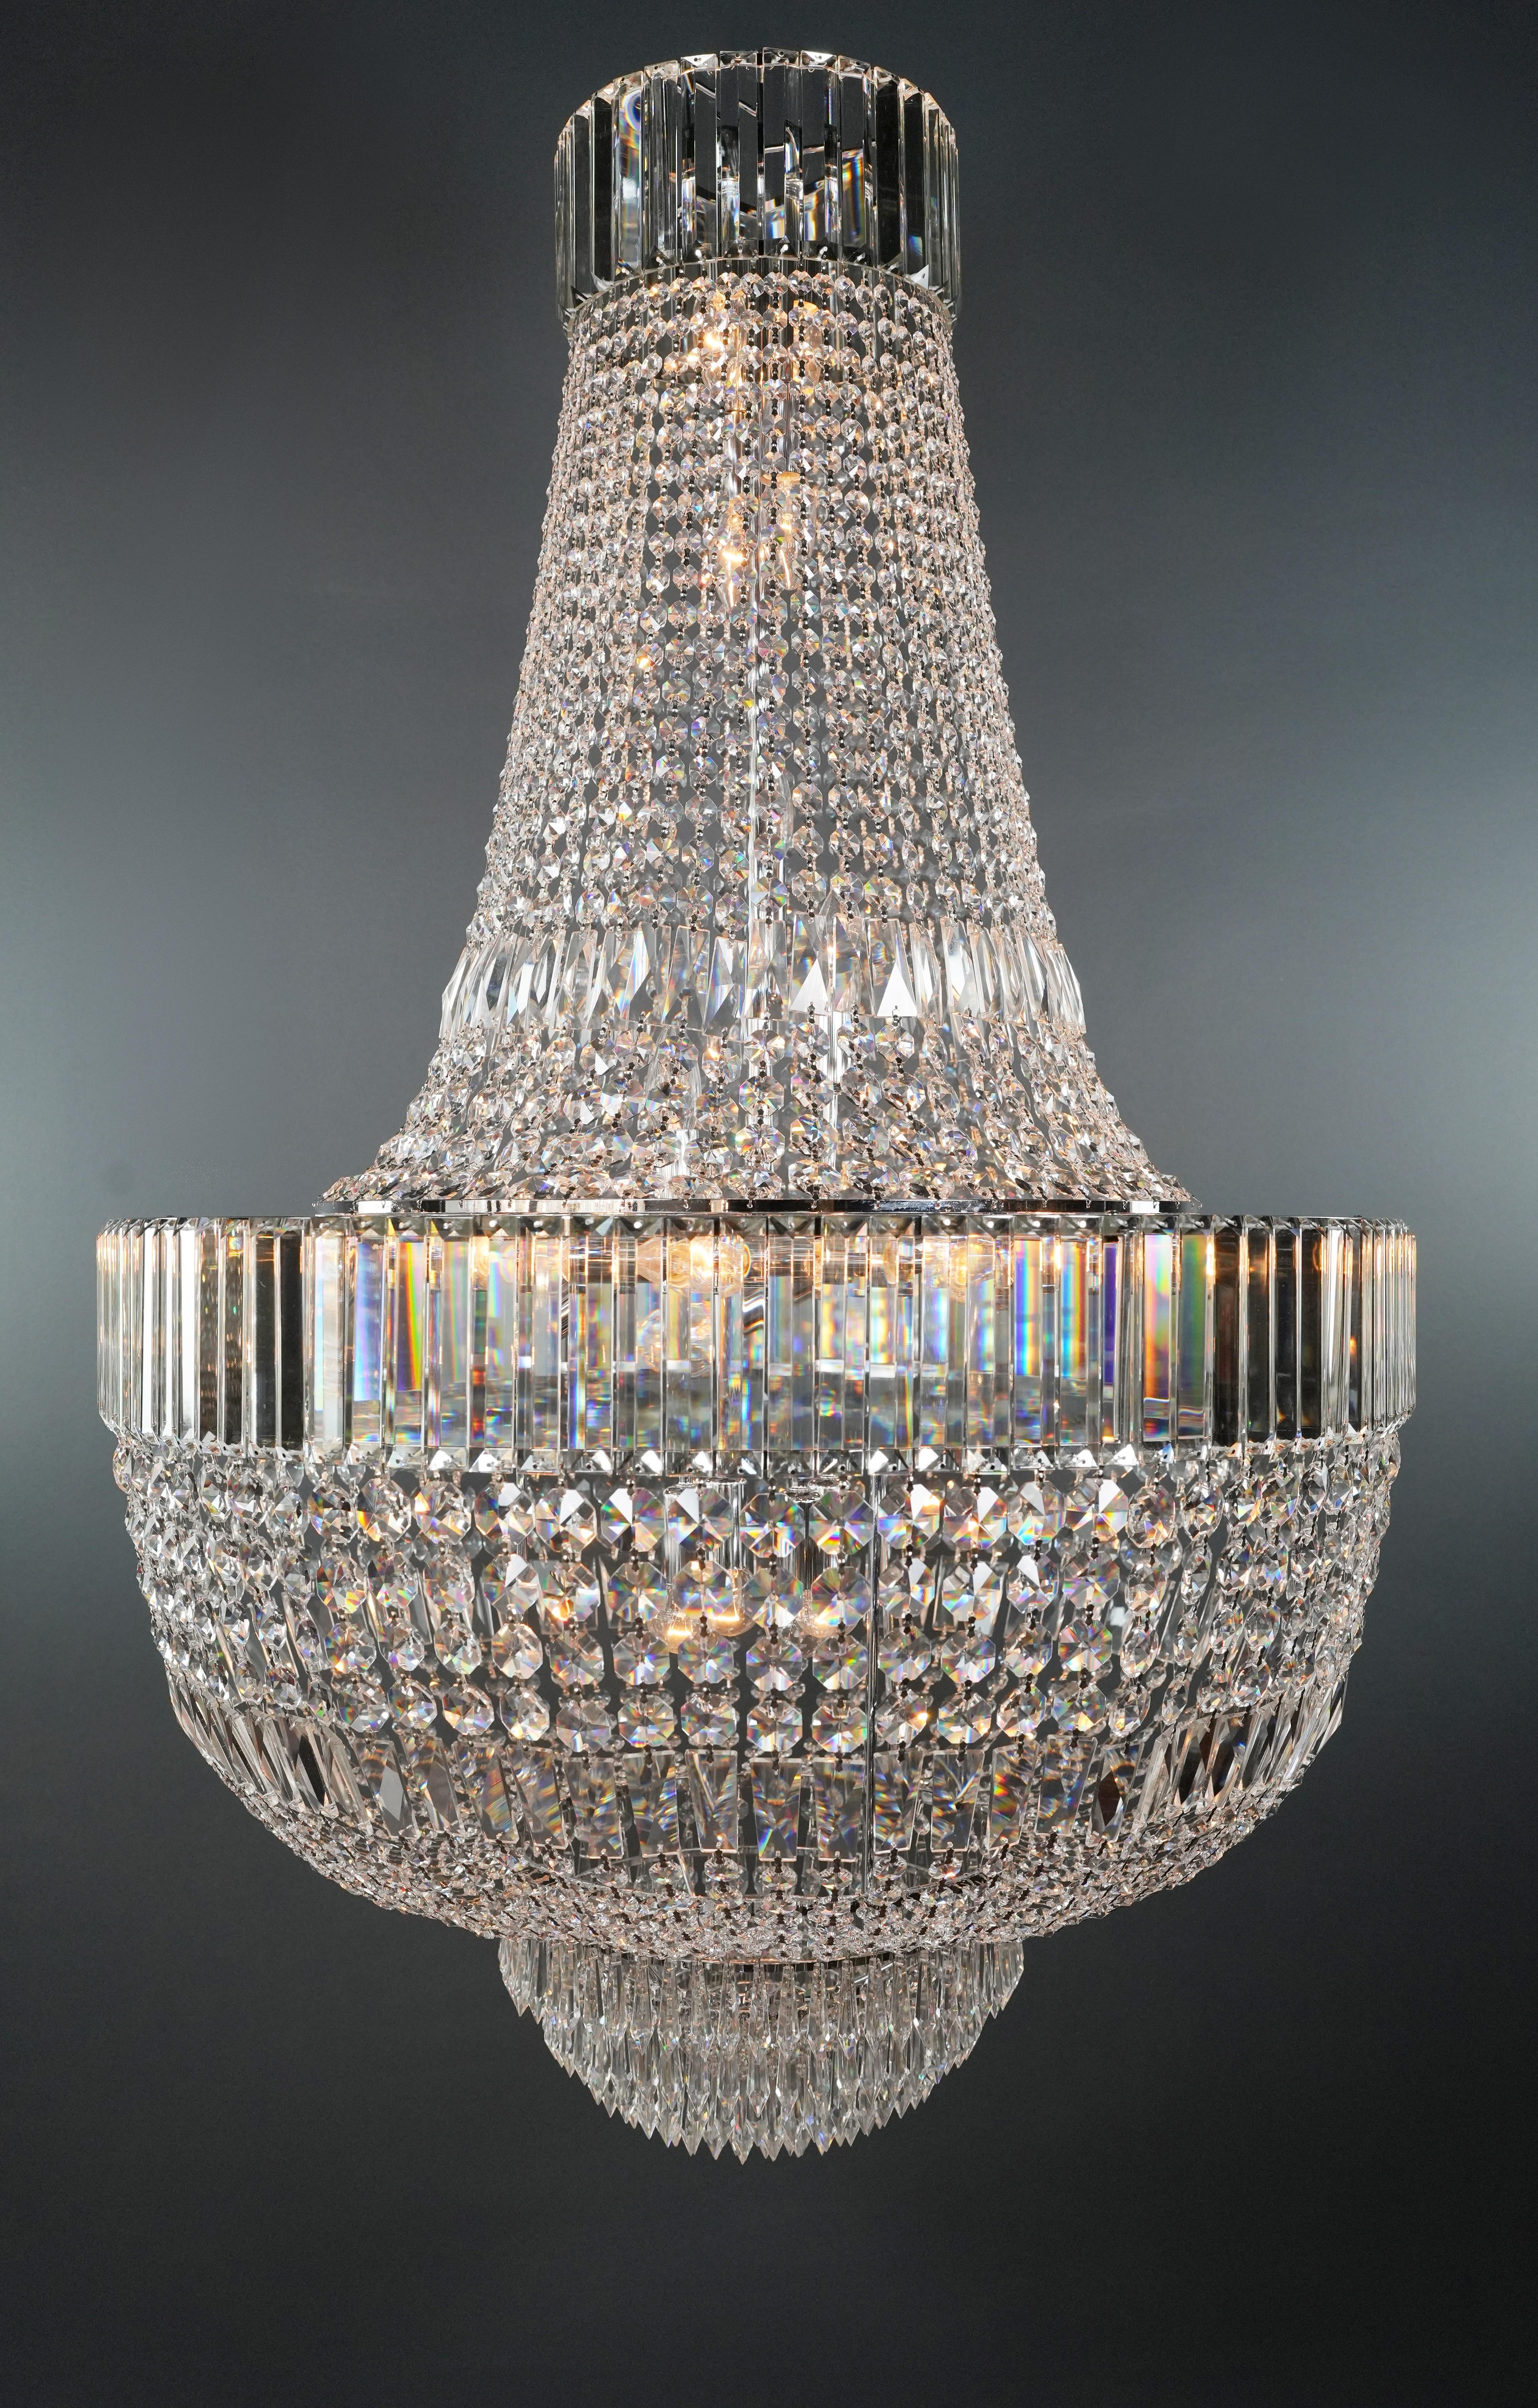 Wir stellen einen neuen Art Deco-Kristalllüster vor, der die Pracht der Empire-Ära einfängt und gleichzeitig moderne Raffinesse bietet. Dieser aus exquisitem Bleikristall gefertigte Kronleuchter ist das Ergebnis einer sorgfältigen internen